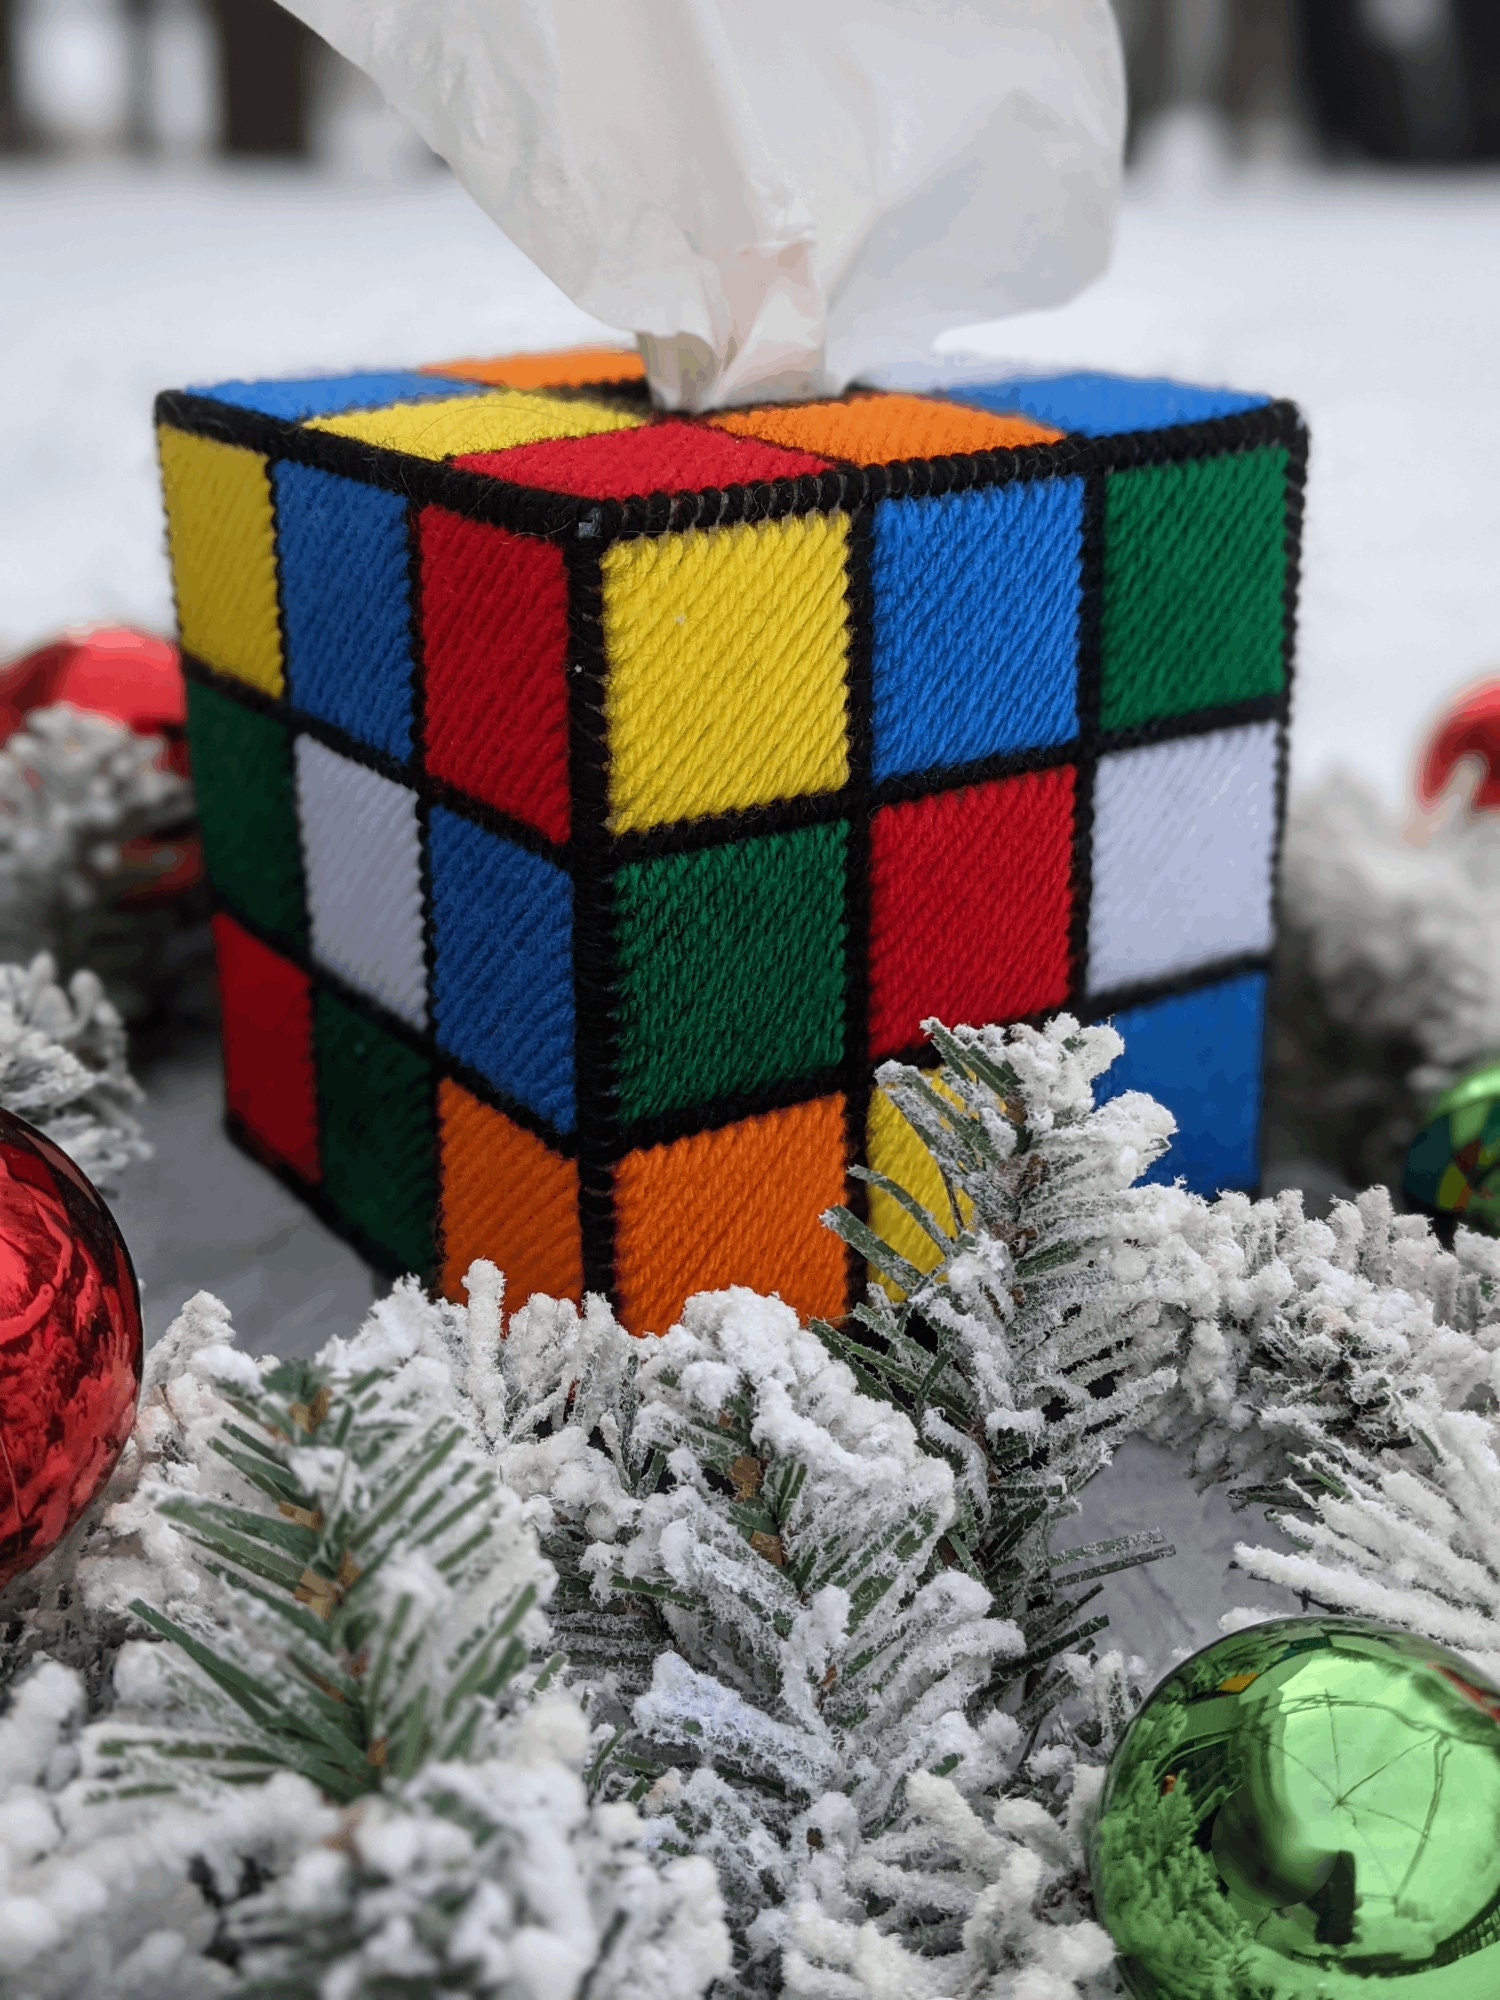 Créer une boîte à mouchoirs Rubik's Cube * Idée Créative